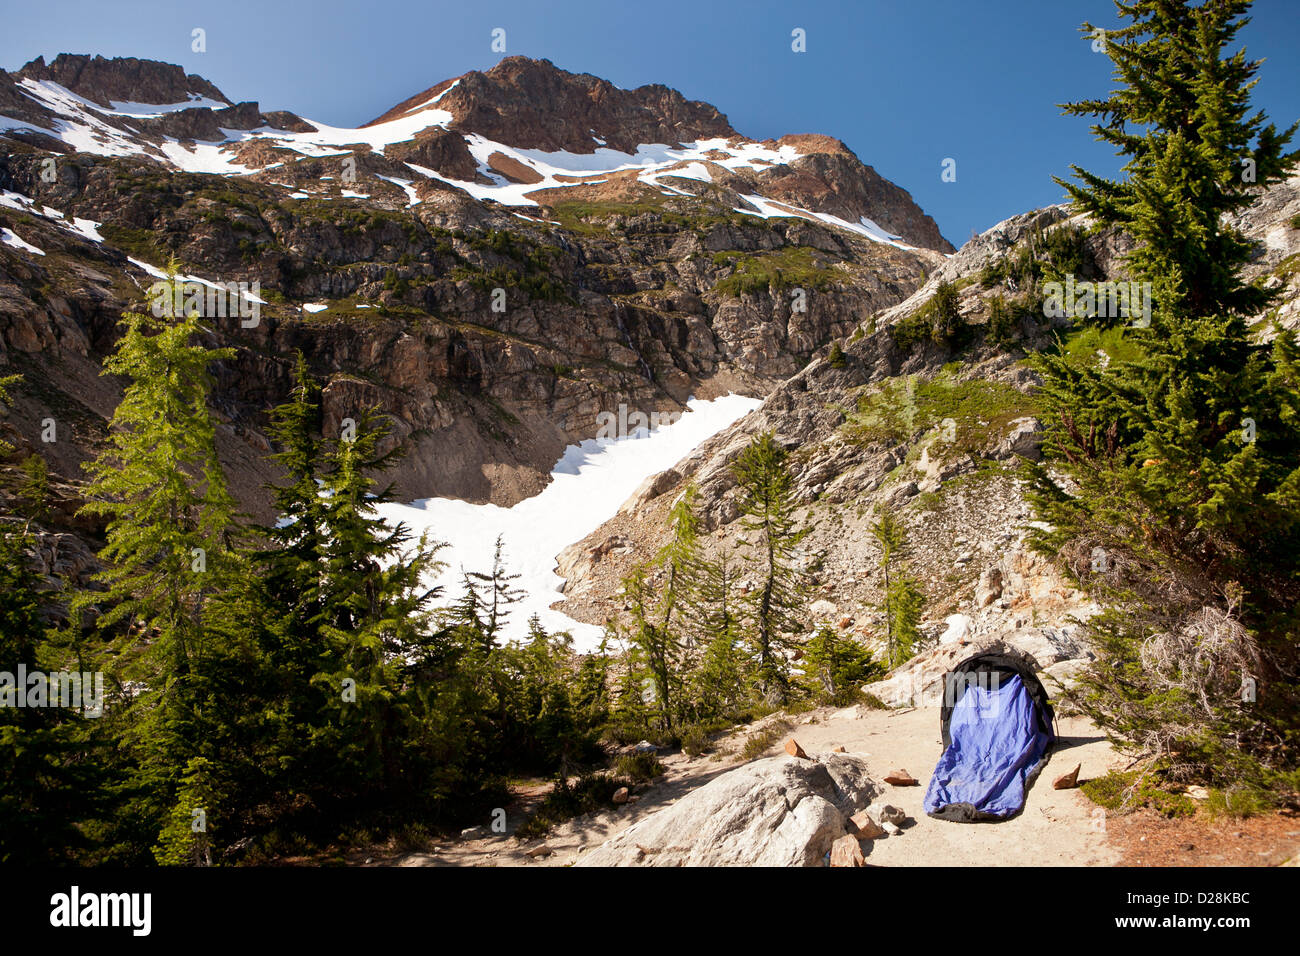 Camp in Lärche Knopf unterhalb der Spinne Gletscher, Glacier Peak Wilderness, North Cascades, Washington. Stockfoto